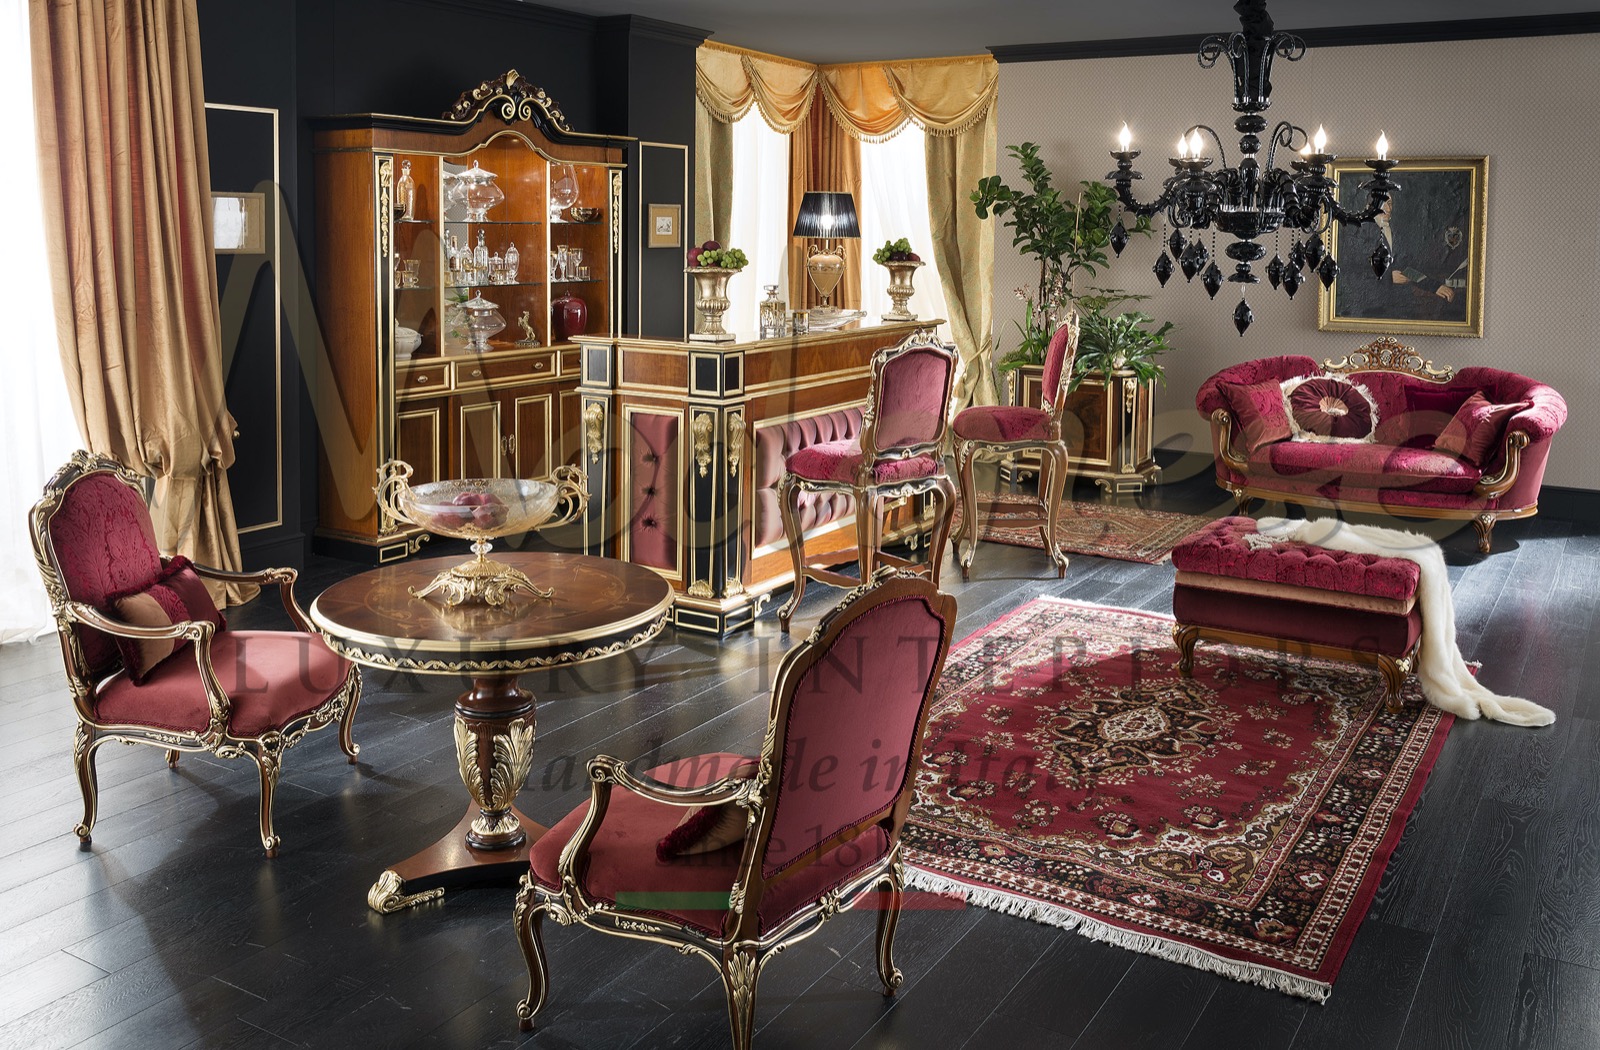 Fabrication artisanale italienne de meubles de luxe production sur mesure design élégant et raffiné projets exclusifs maison villa décoration détails or meilleurs intérieurs